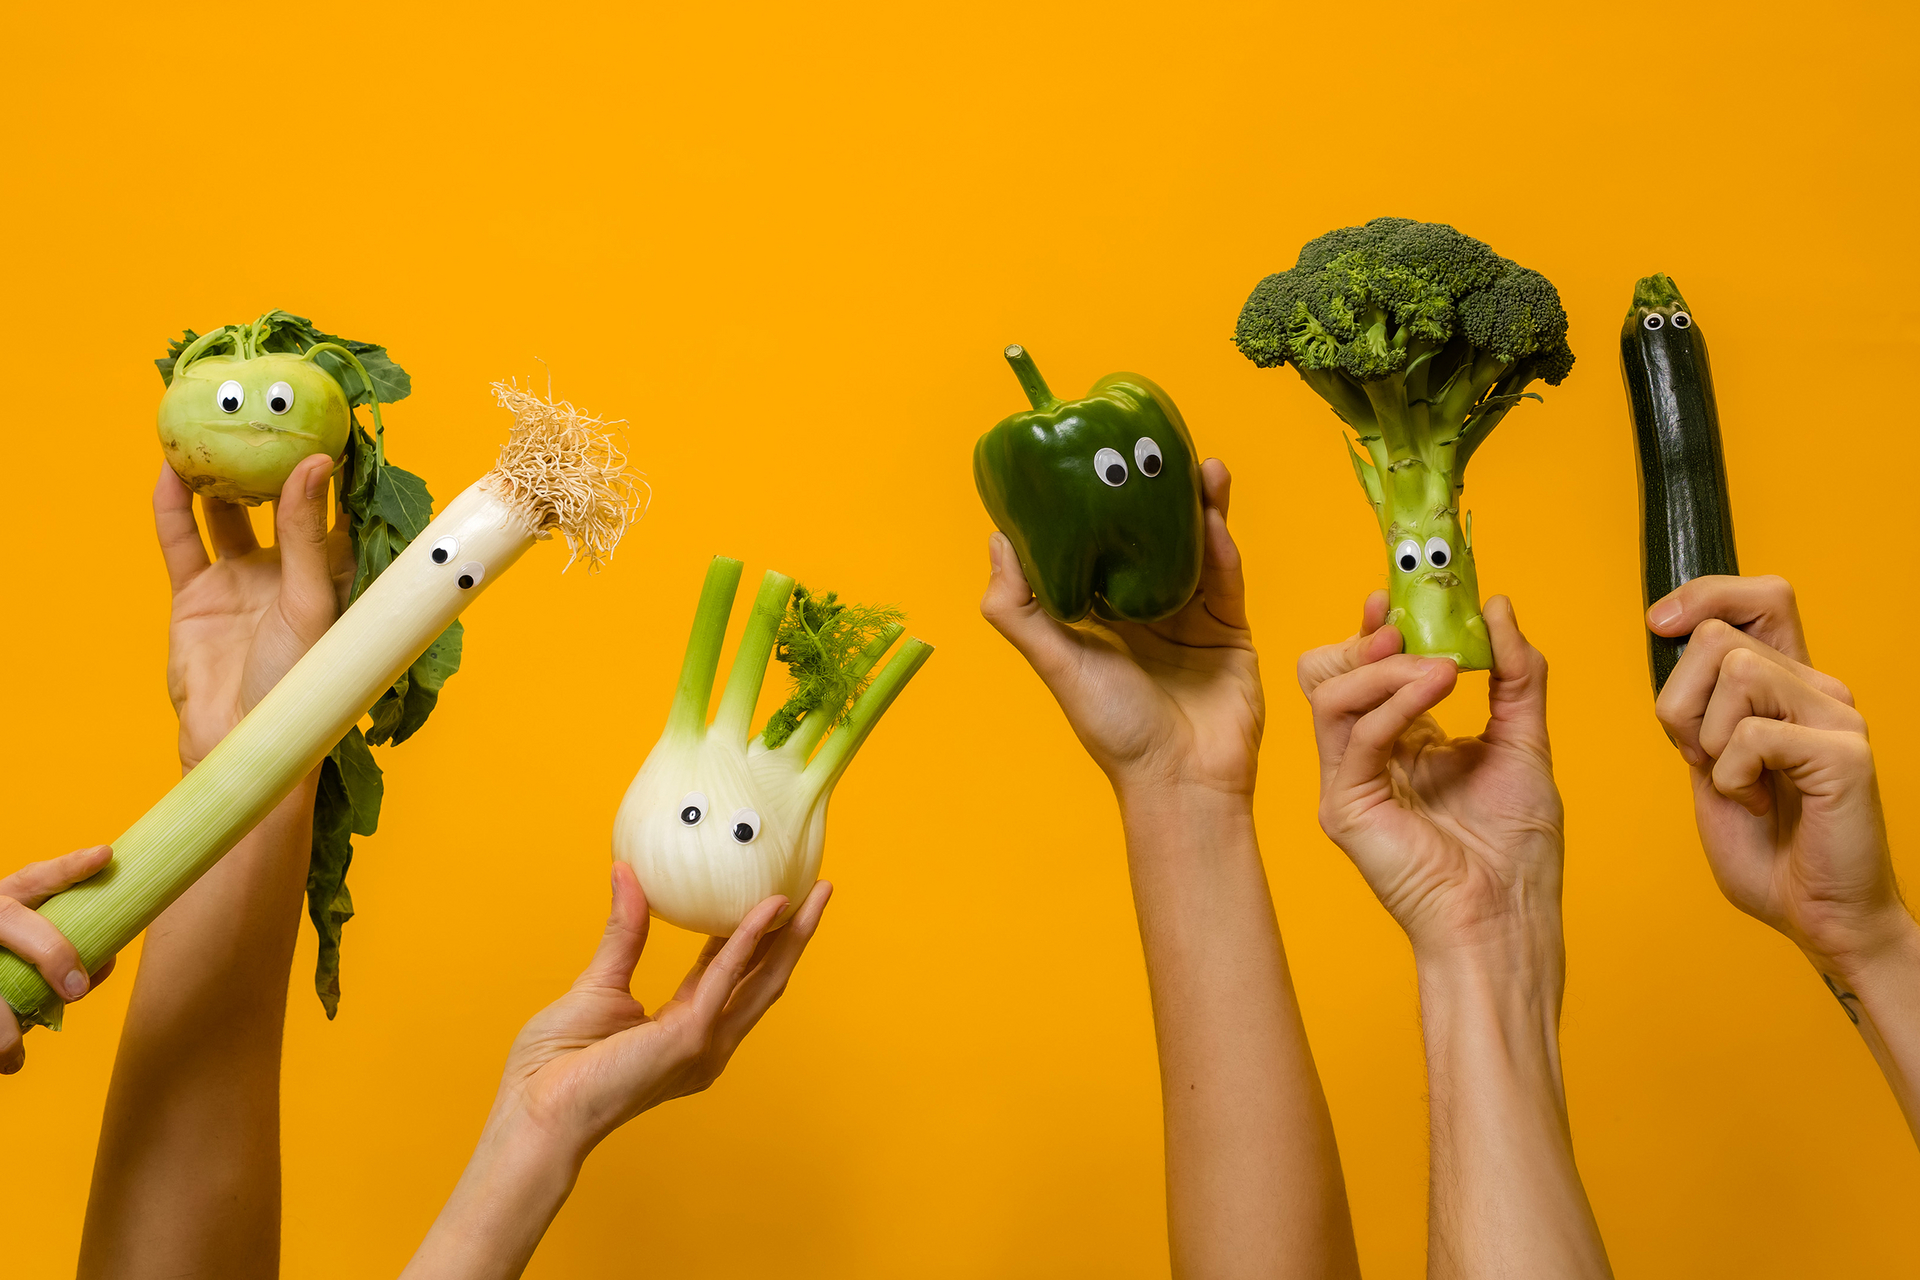 Sechs Hände halten je ein Stück Gemüse mit aufgeklebten Augen